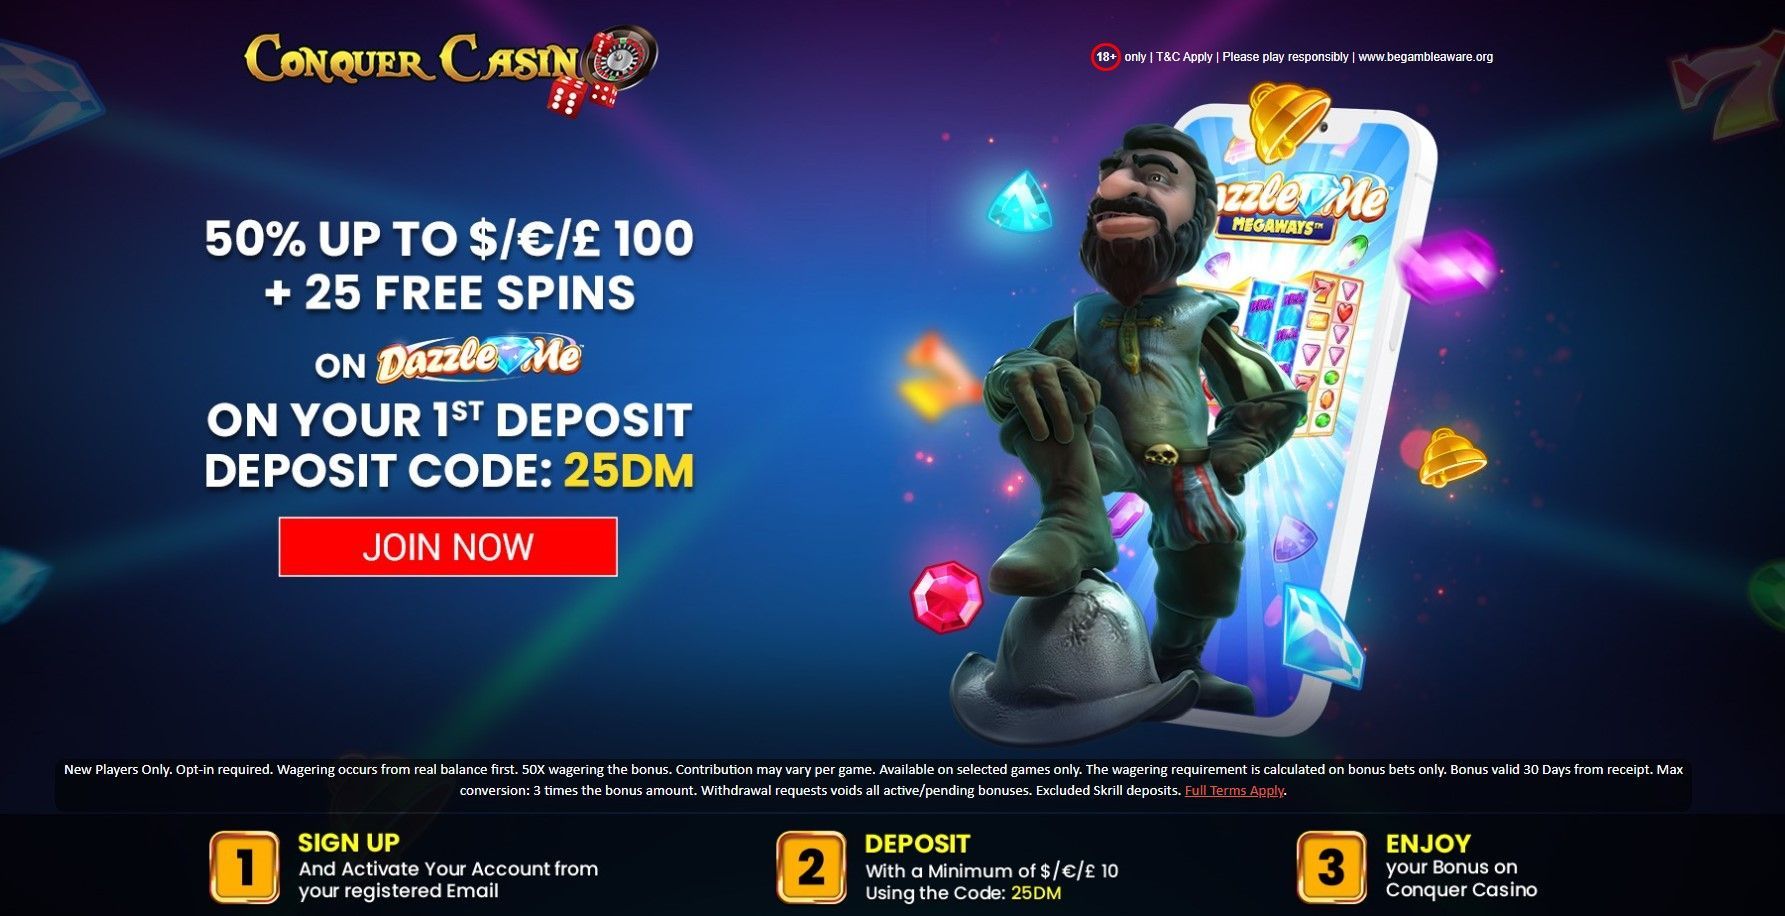 fruity king online casino Offer from Go Gambling